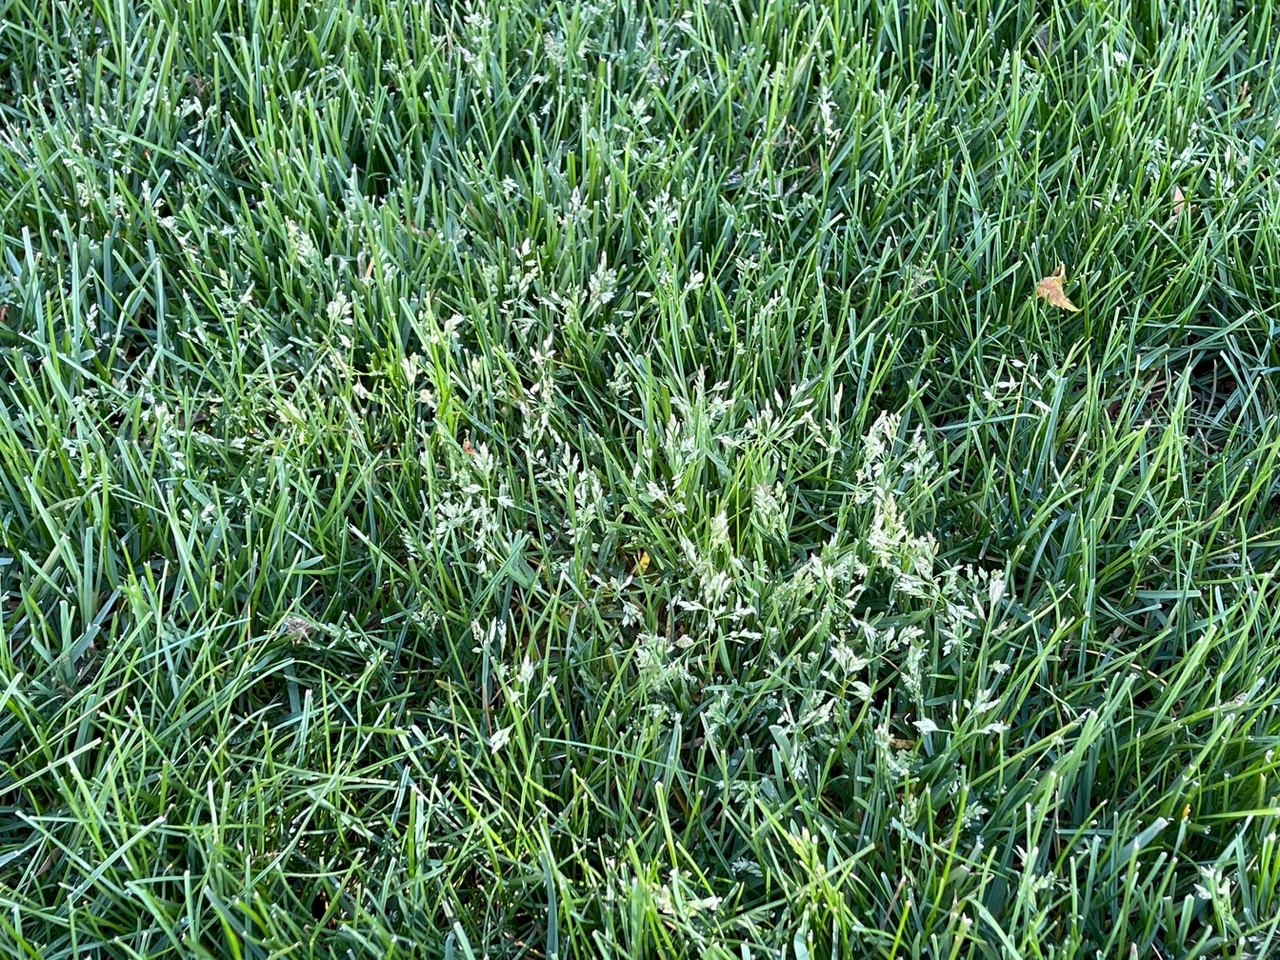 Annual bluegrass seedheads in a lawn.jpg